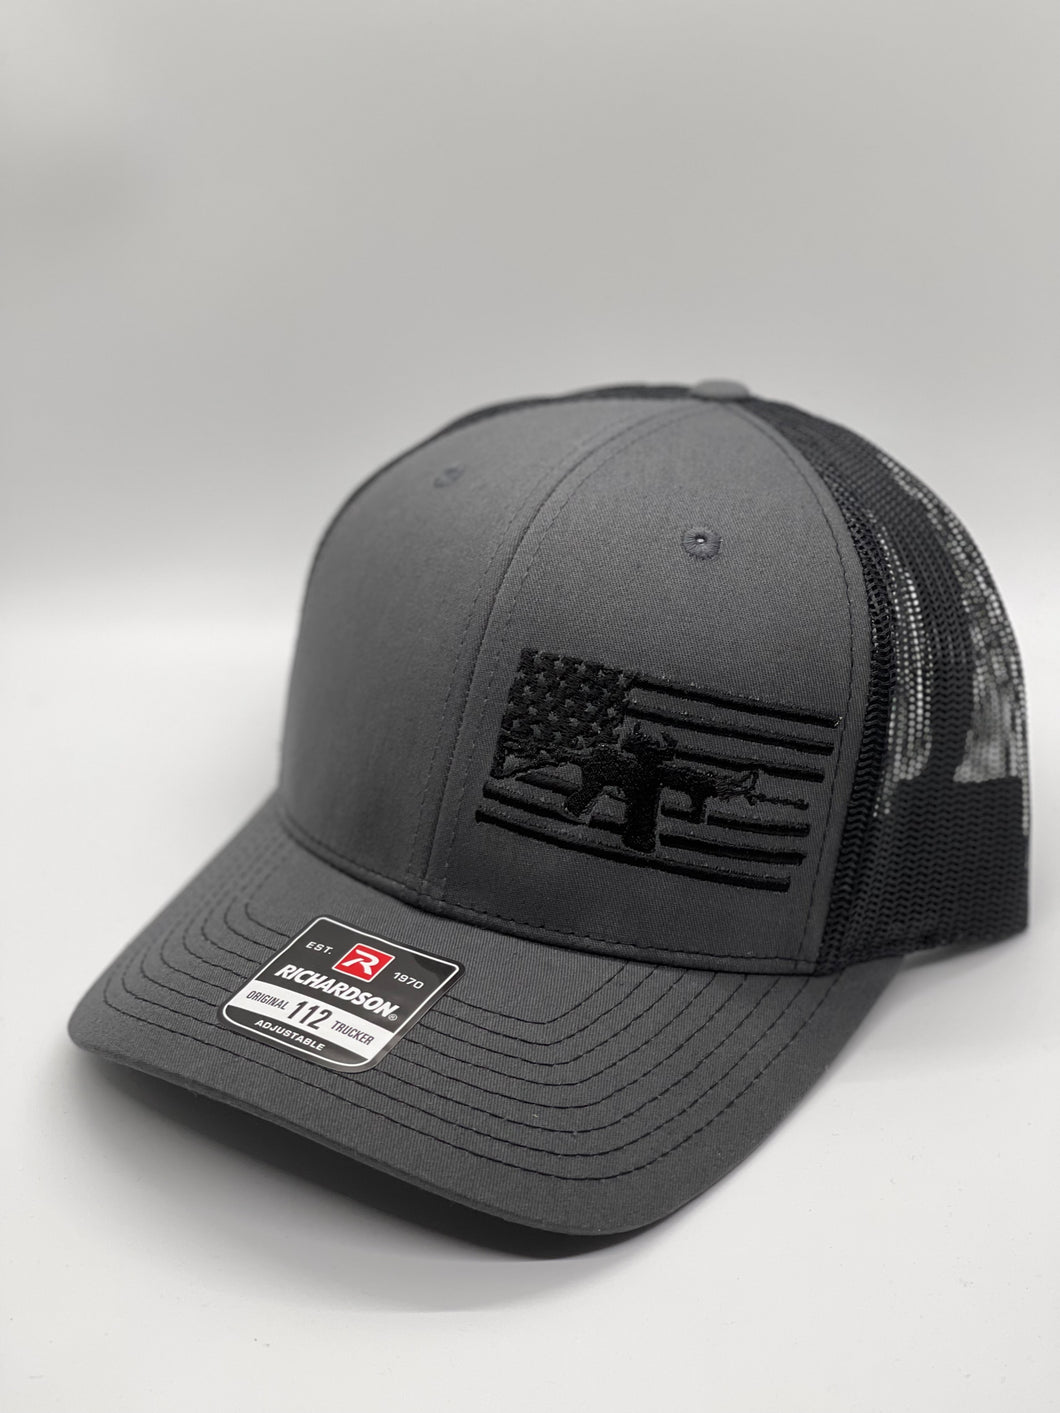 2nd Amendment American Flag Tactical Cracker Hat